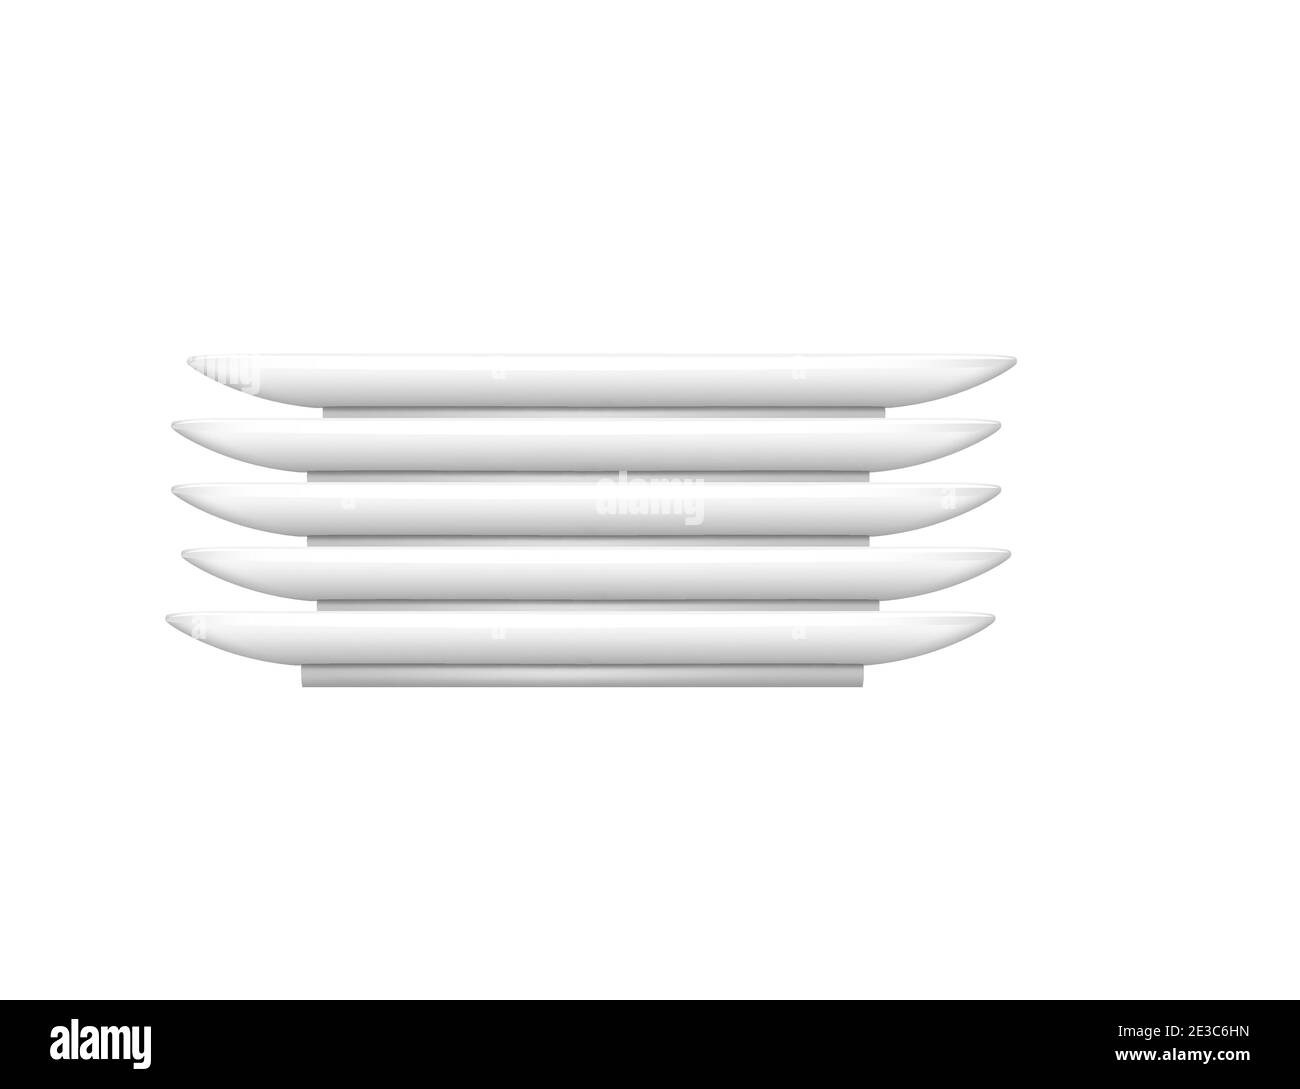 Stapel Stapel Stapel von sauberen weißen Keramikplatten Vektorgrafik auf Weißer Hintergrund im realistischen Stil Stock Vektor